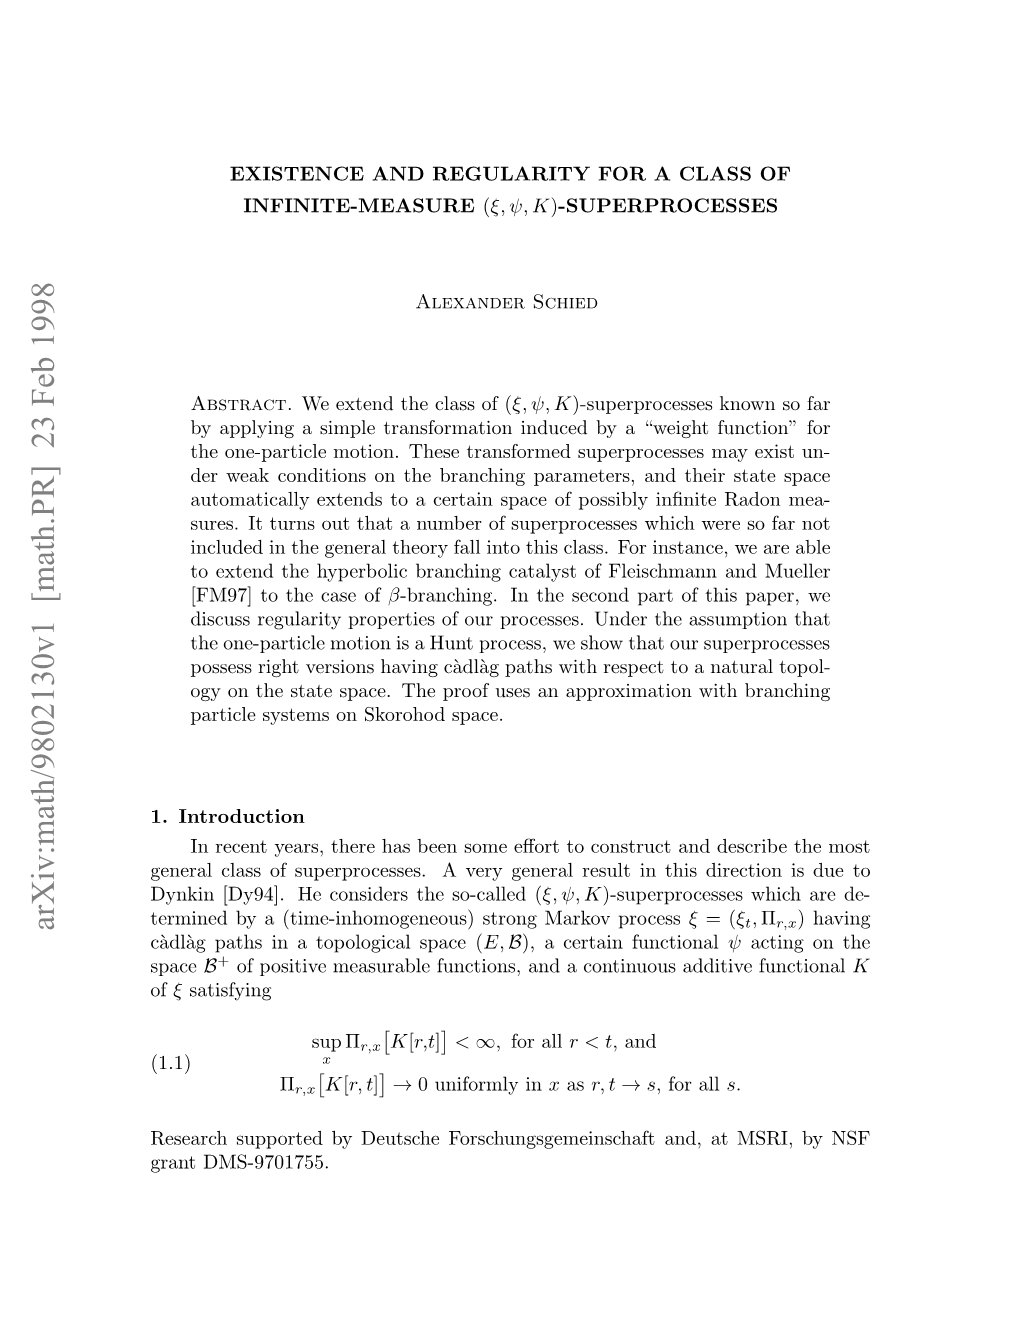 Math.PR] 23 Feb 1998 of (1 Space Eerhspotdb Etcefrcuggmishf an Forschungsgemeinschaft DMS-9701755